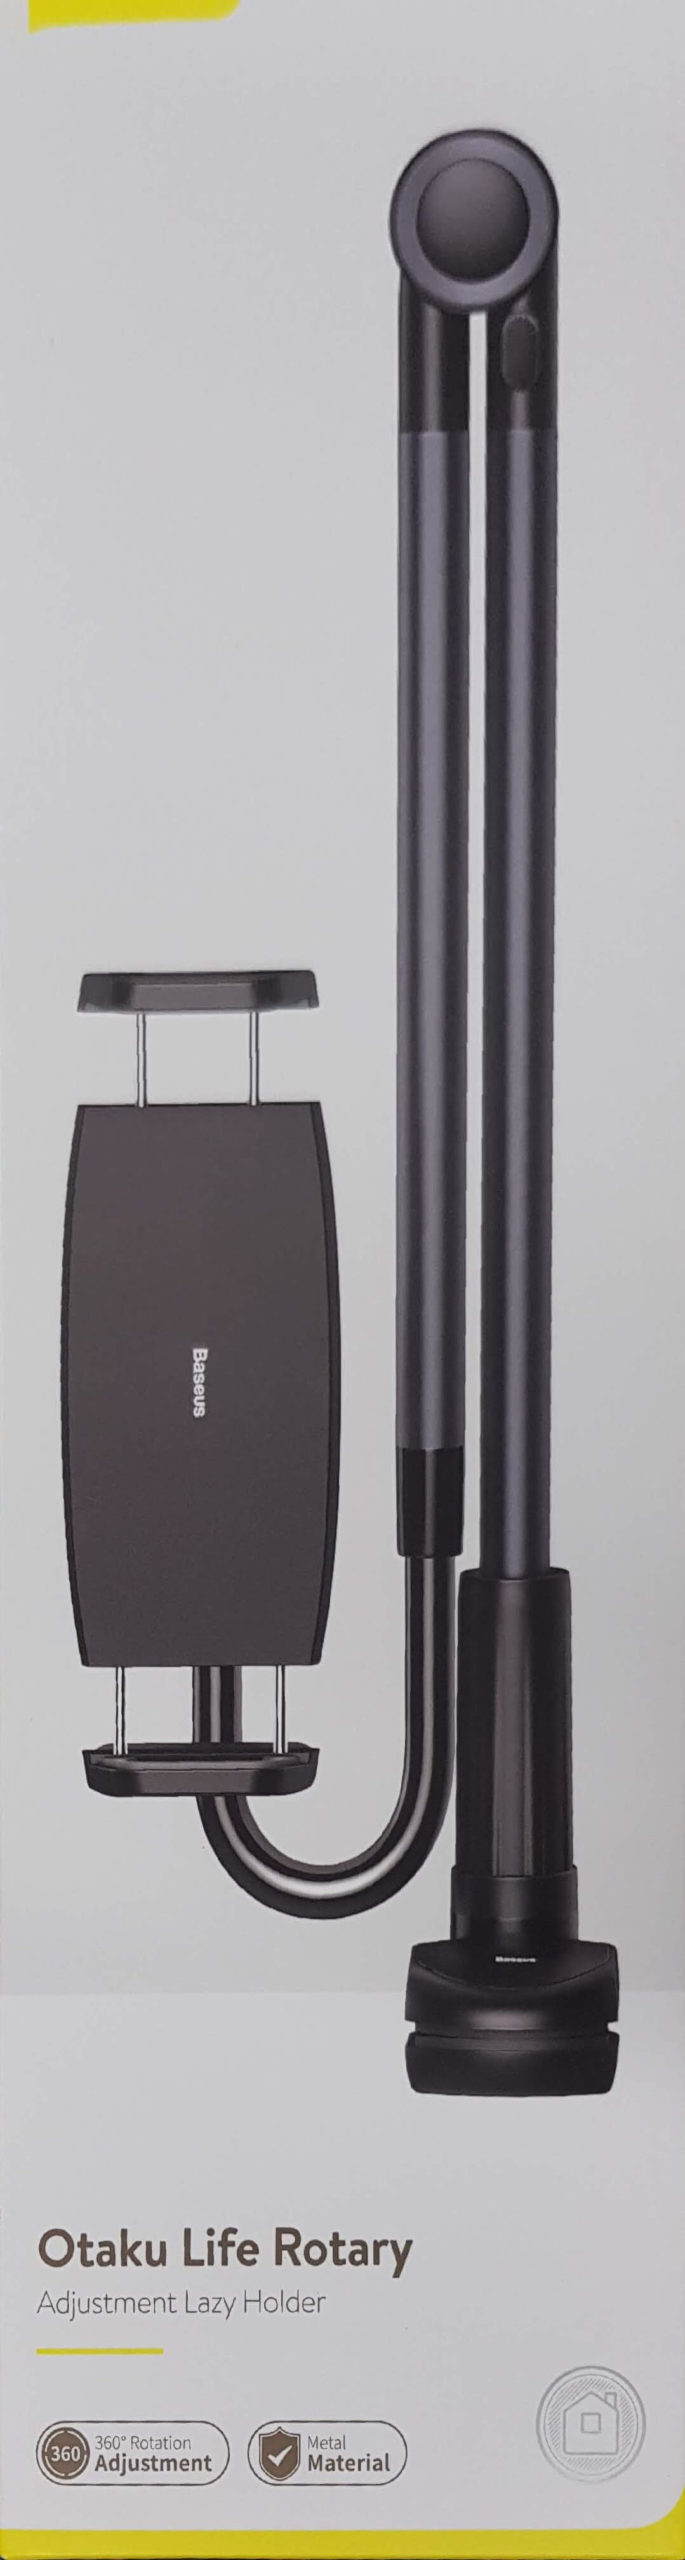 Original Baseus Lazy Holder for Bed Desk Desktop Office Kitchen Phone Holder Long Arm Flexible Mobile Phone Stand Holder Table Clip Bracket for Smart Phone Tablet - Grey